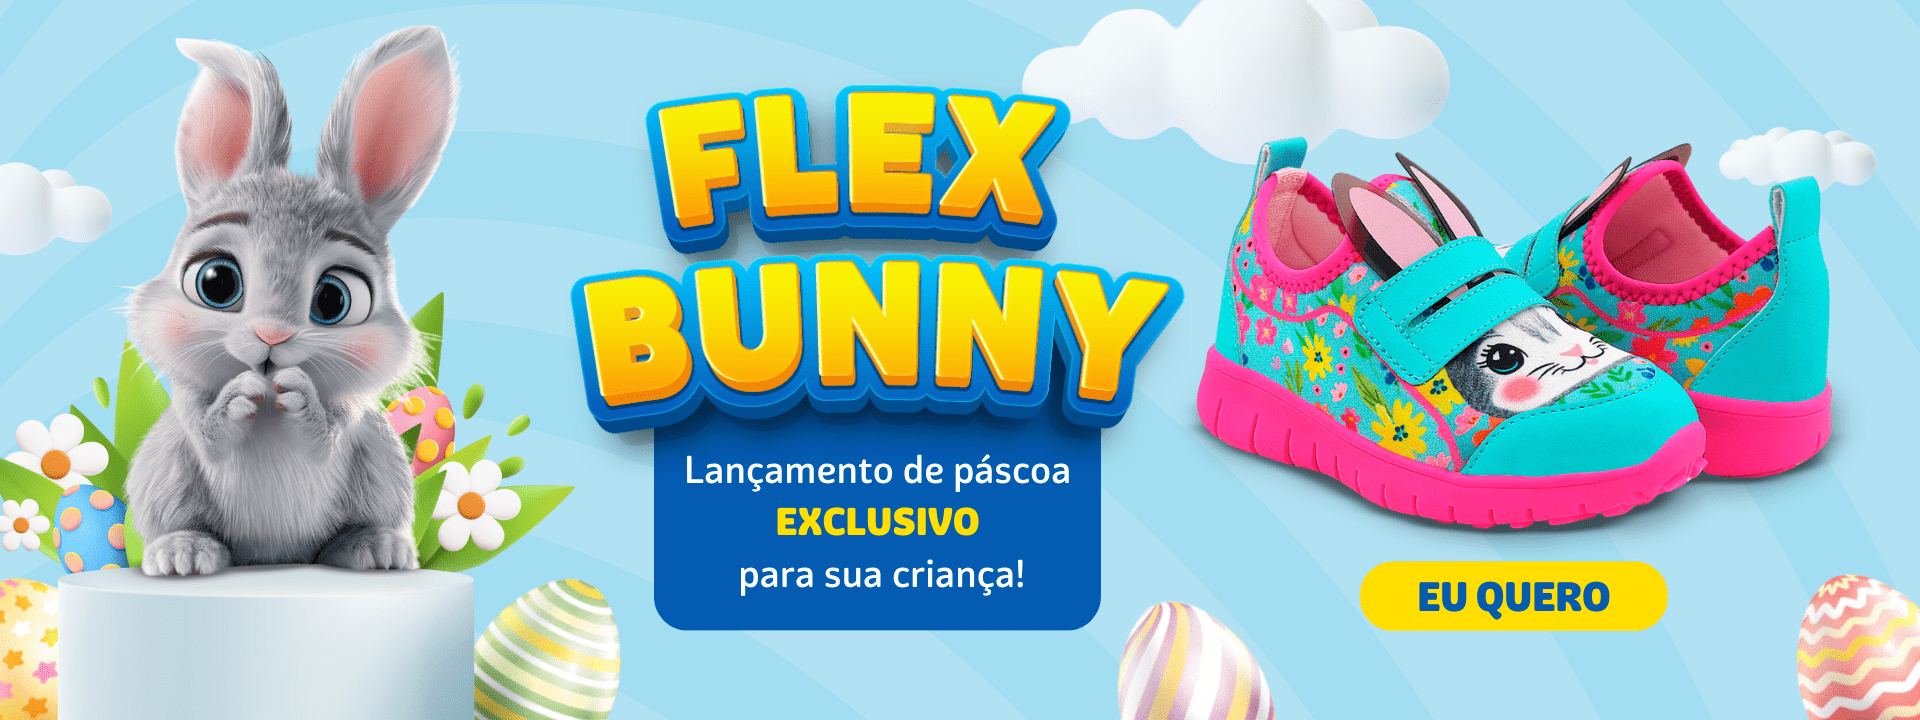 flex-bunny-1920-x-720-px